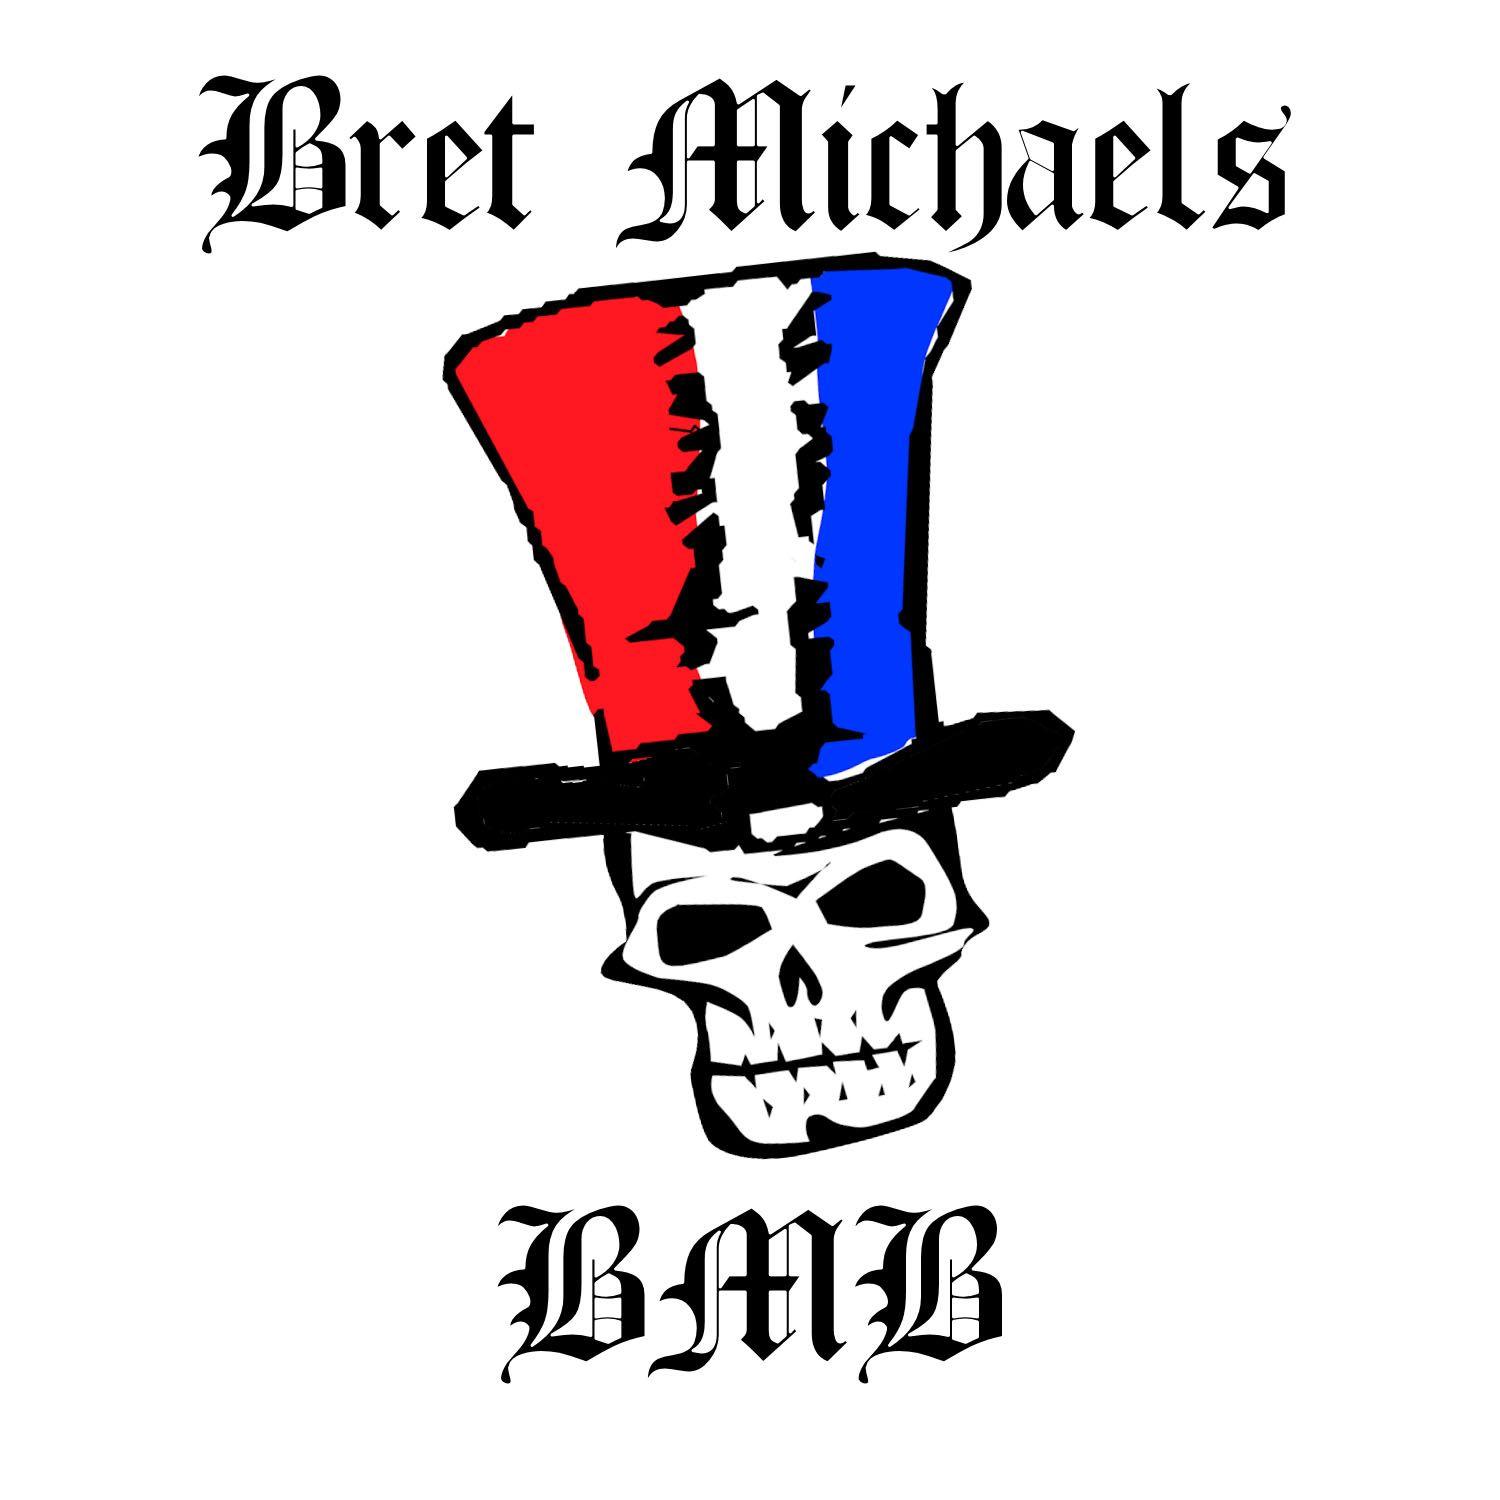 Michaels Art Logo - Bret Michaels Skull Logo Window Cling